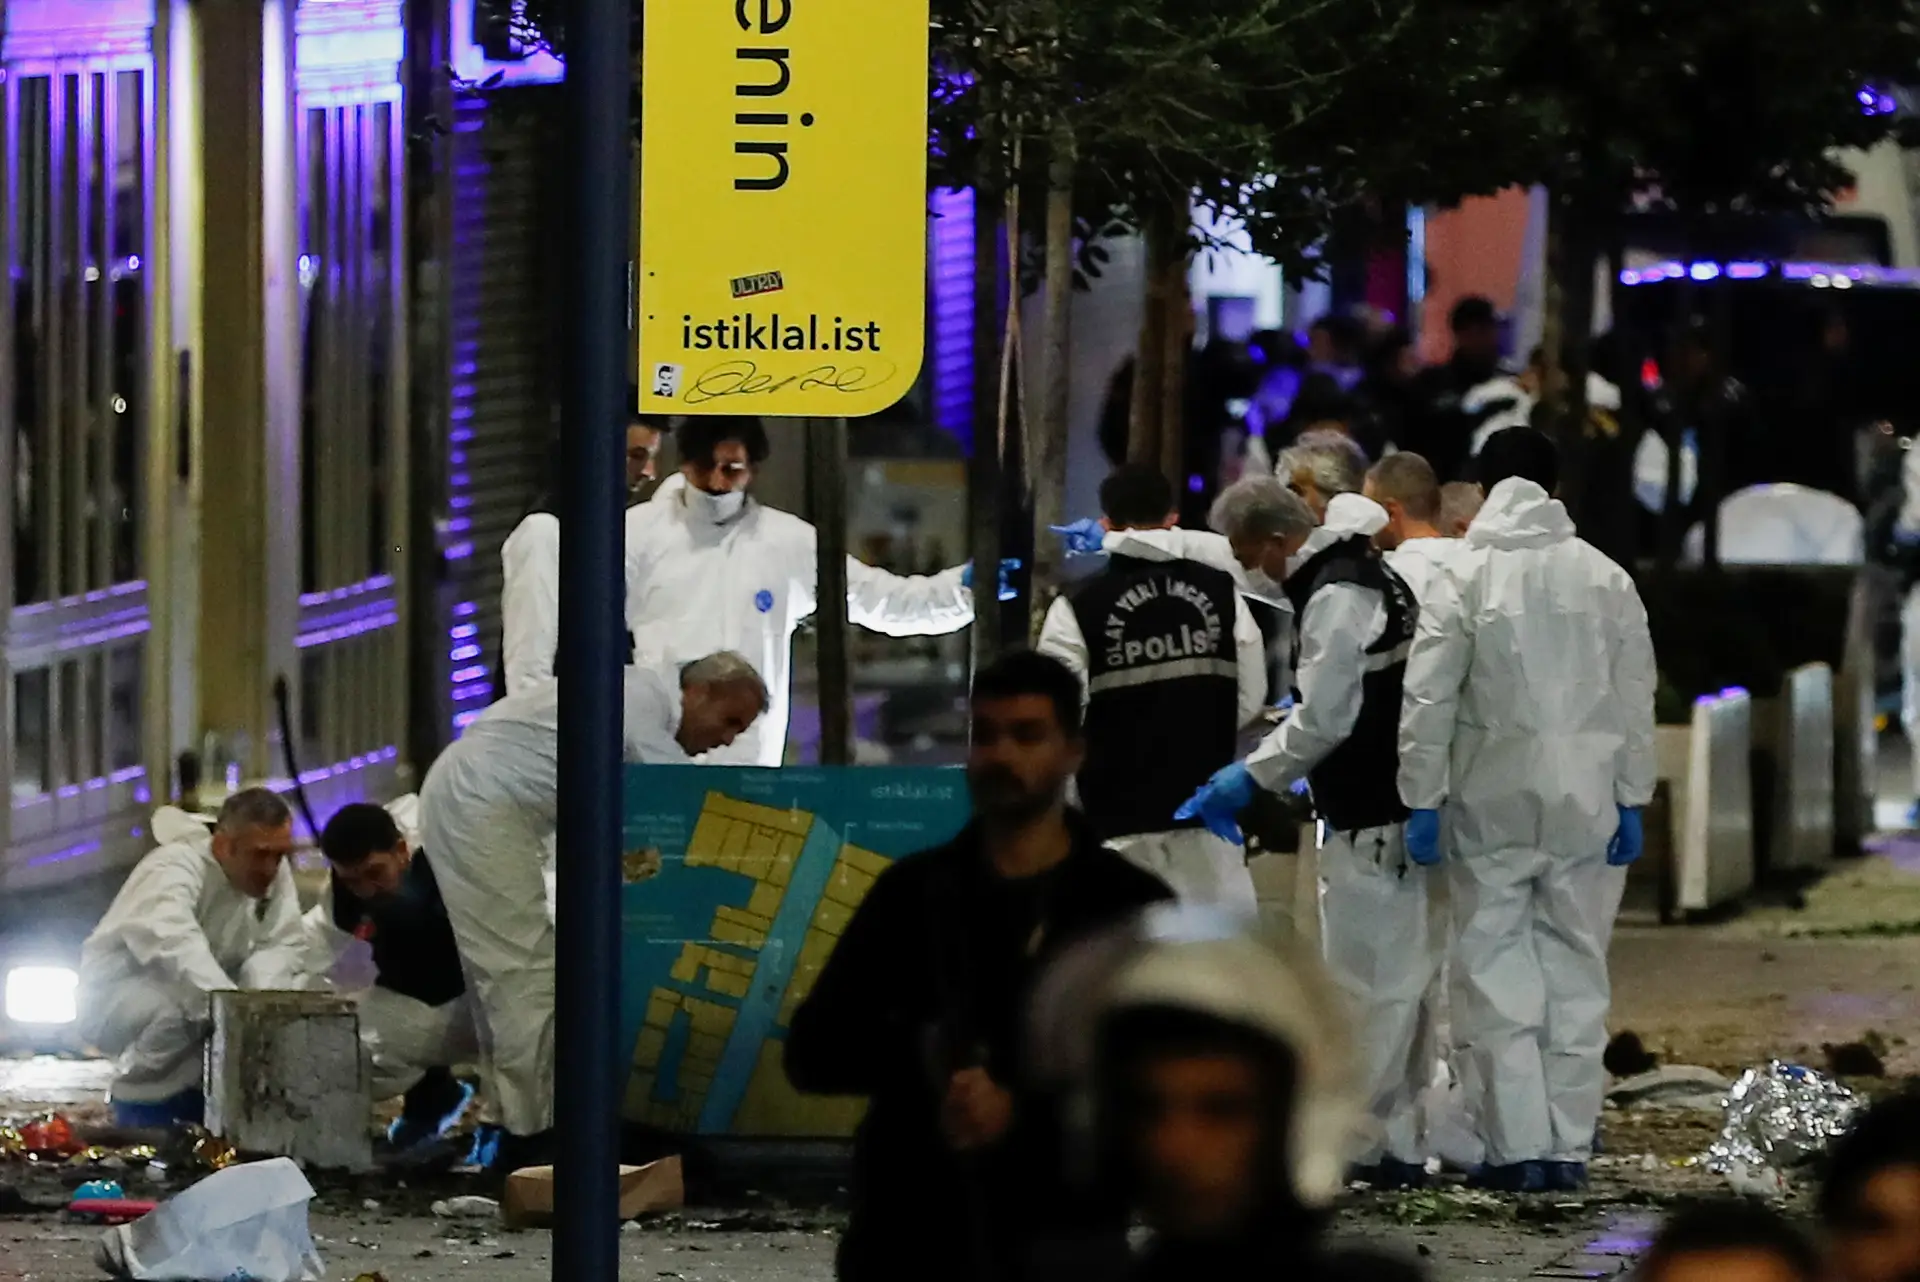 Seis anos depois, atentado em Istambul deixa Turquia à beira de um ataque de nervos